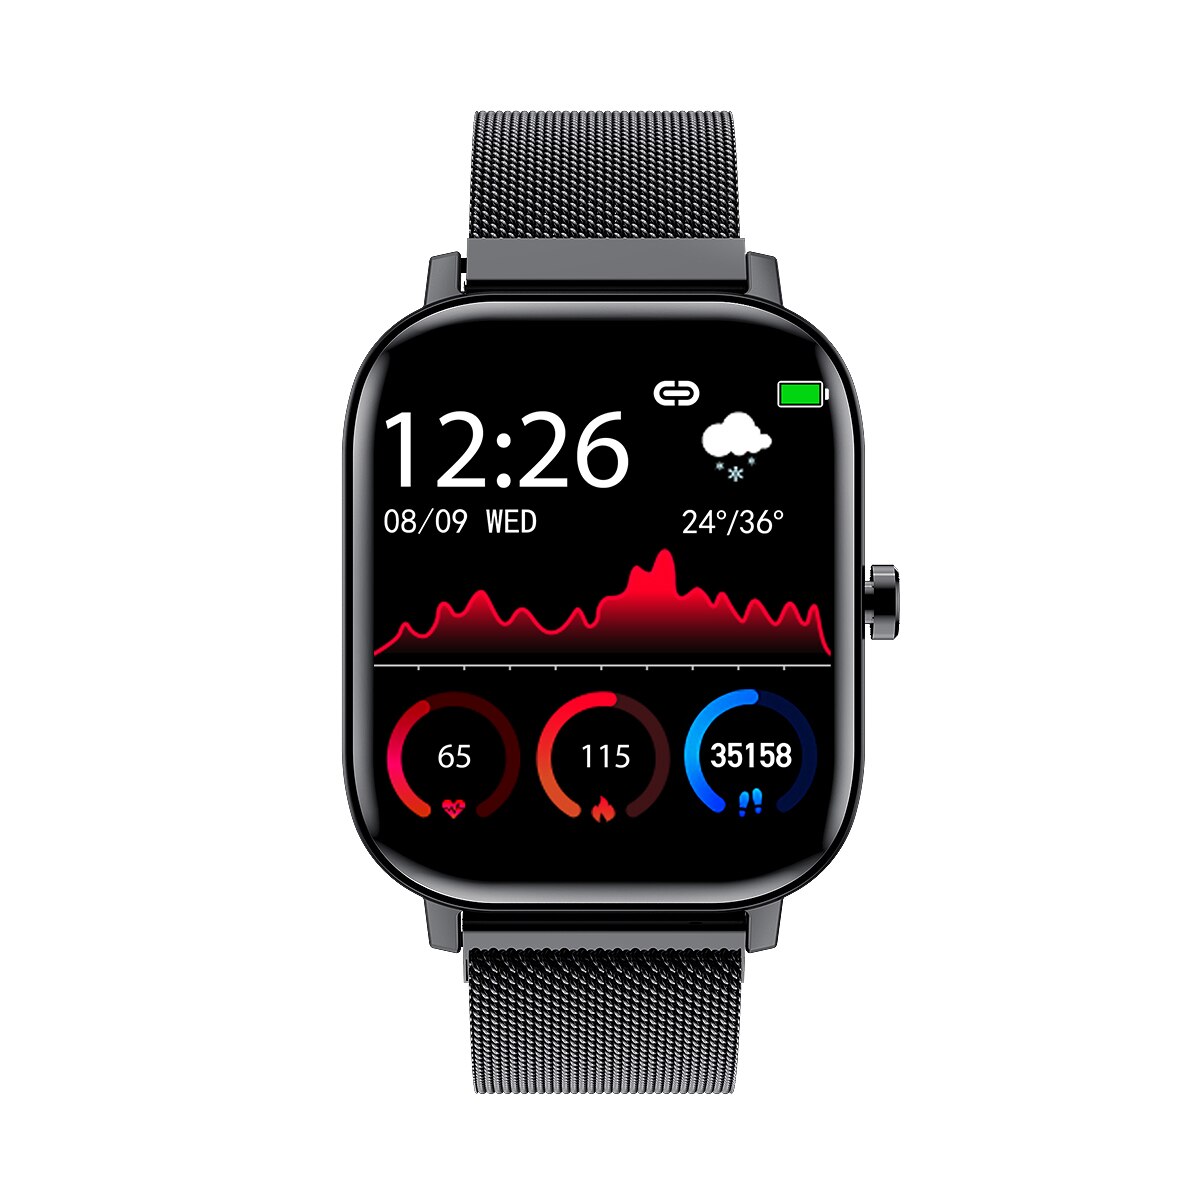 Clever Uhr Männer Frauen I10 1.54 "voll berühren Bildschirm Bluetooth Anruf Smartwatch Herz Bewertung Blutdruck Monitor für Android IOS: Schwarz Metall